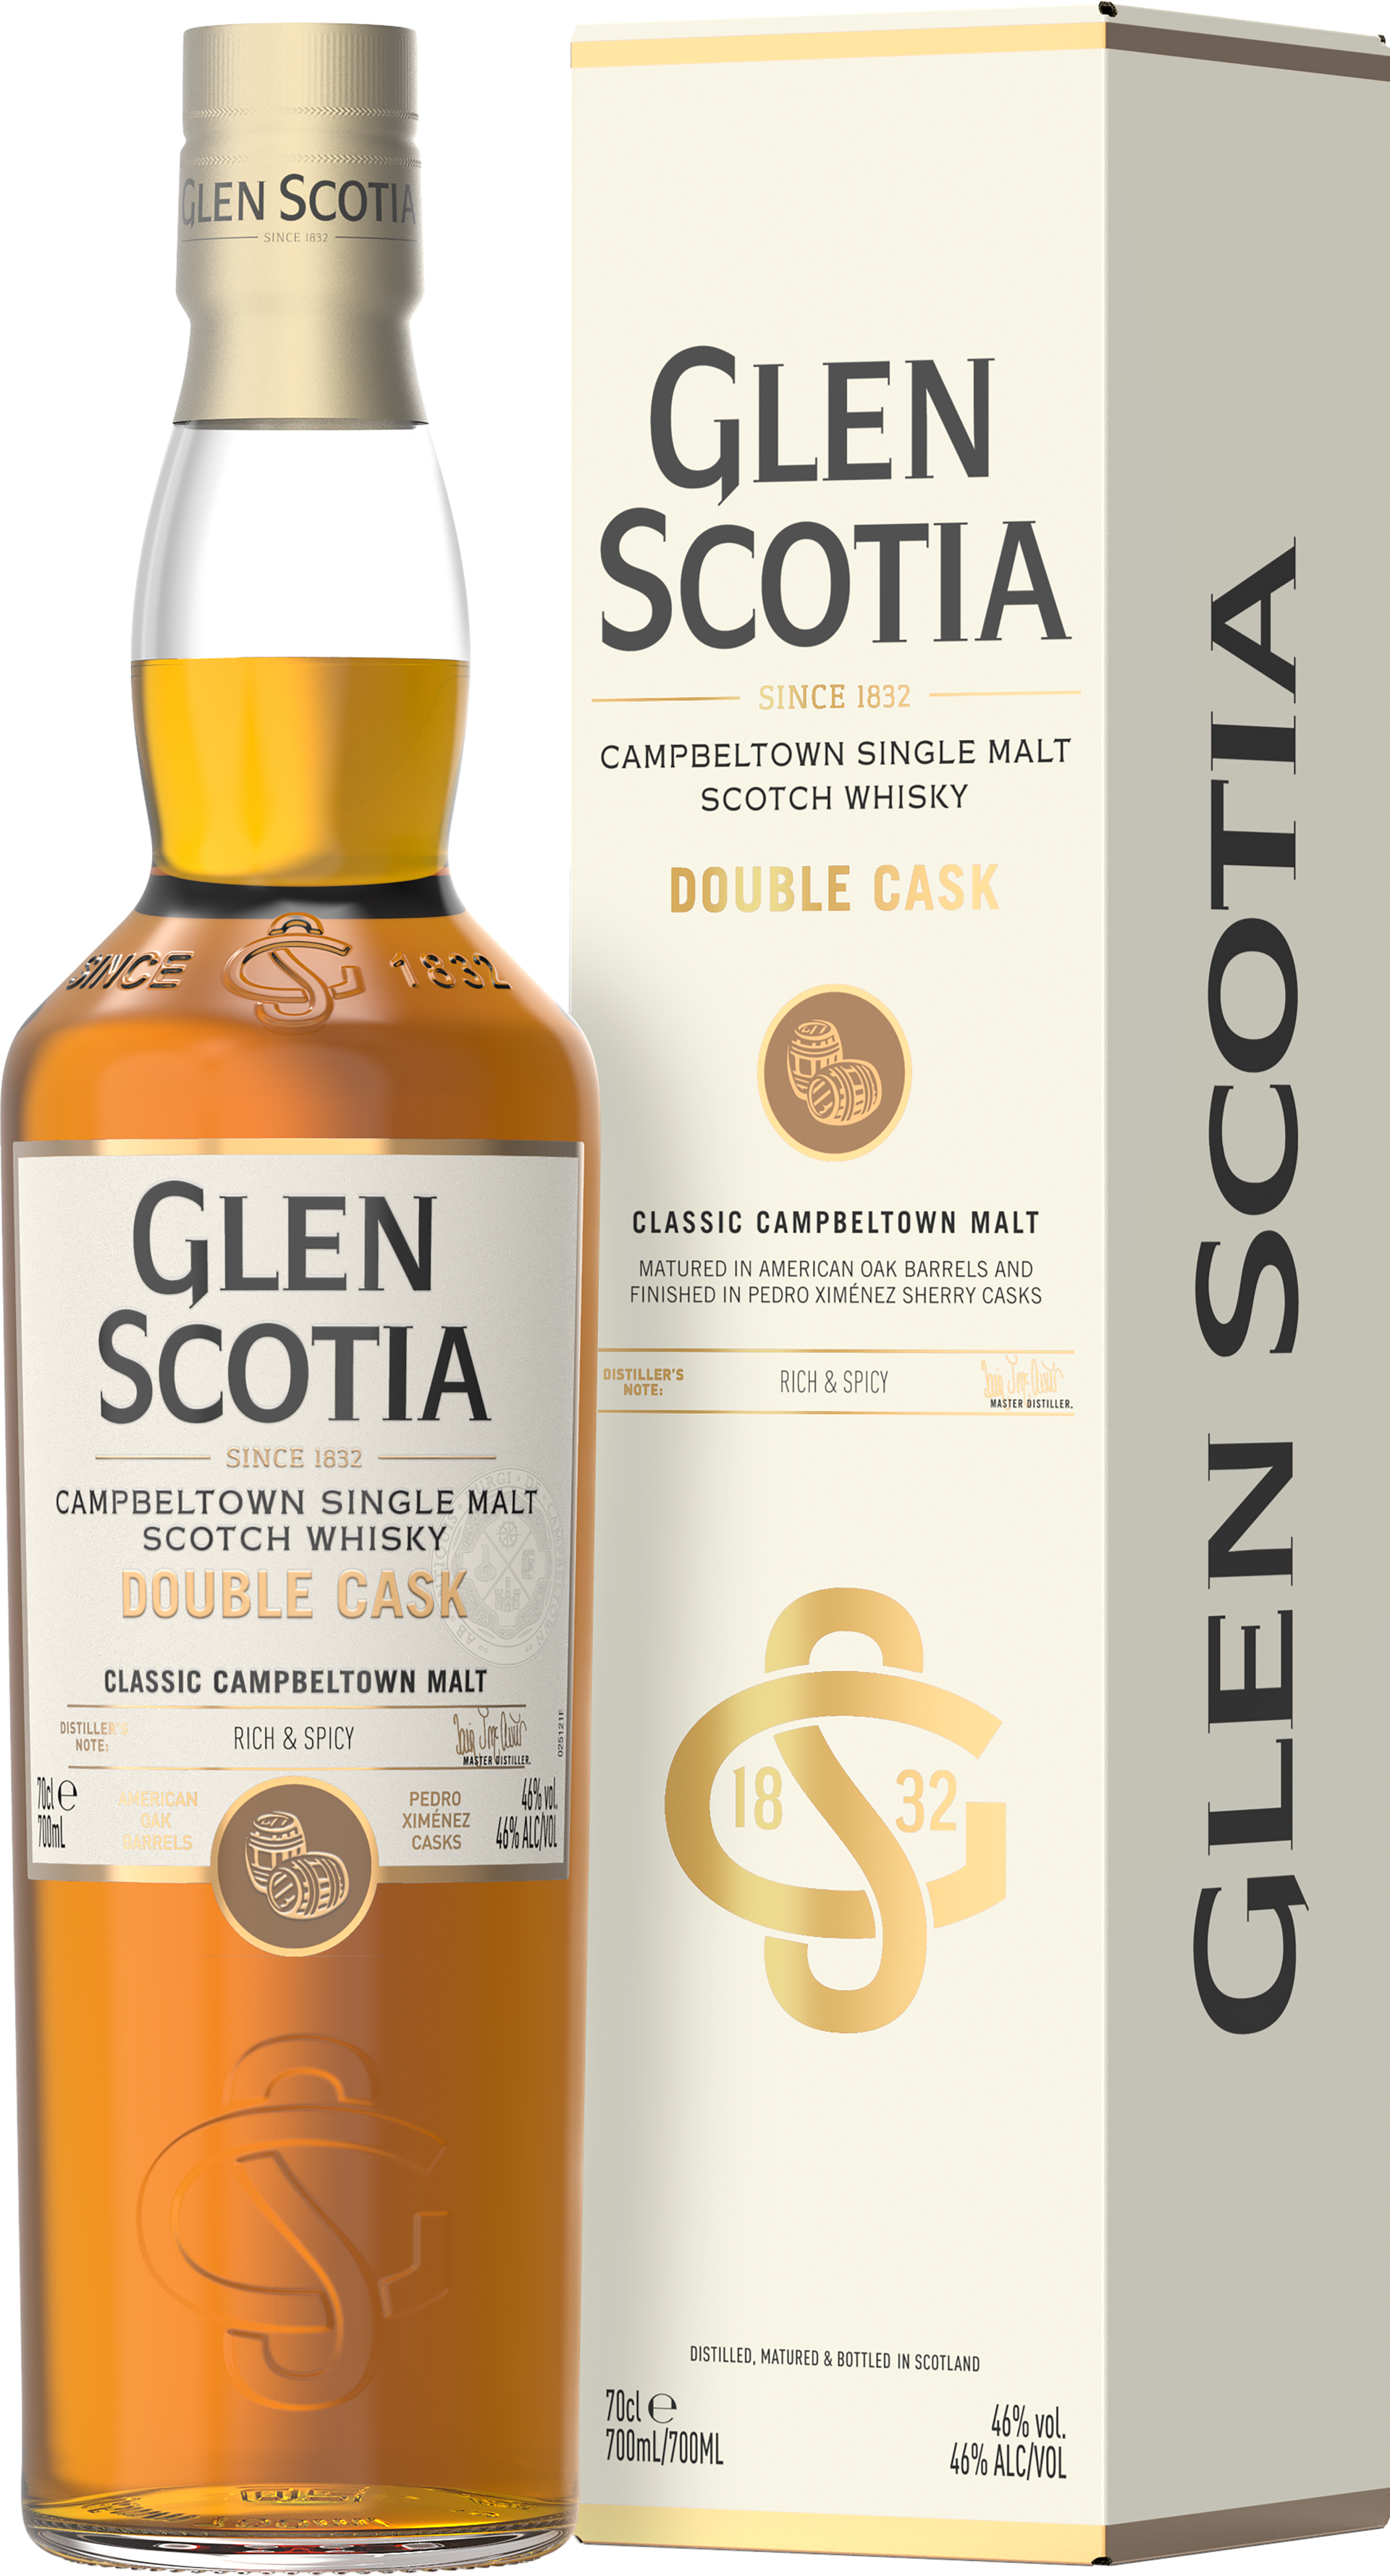 Glen Scotia Double Cask